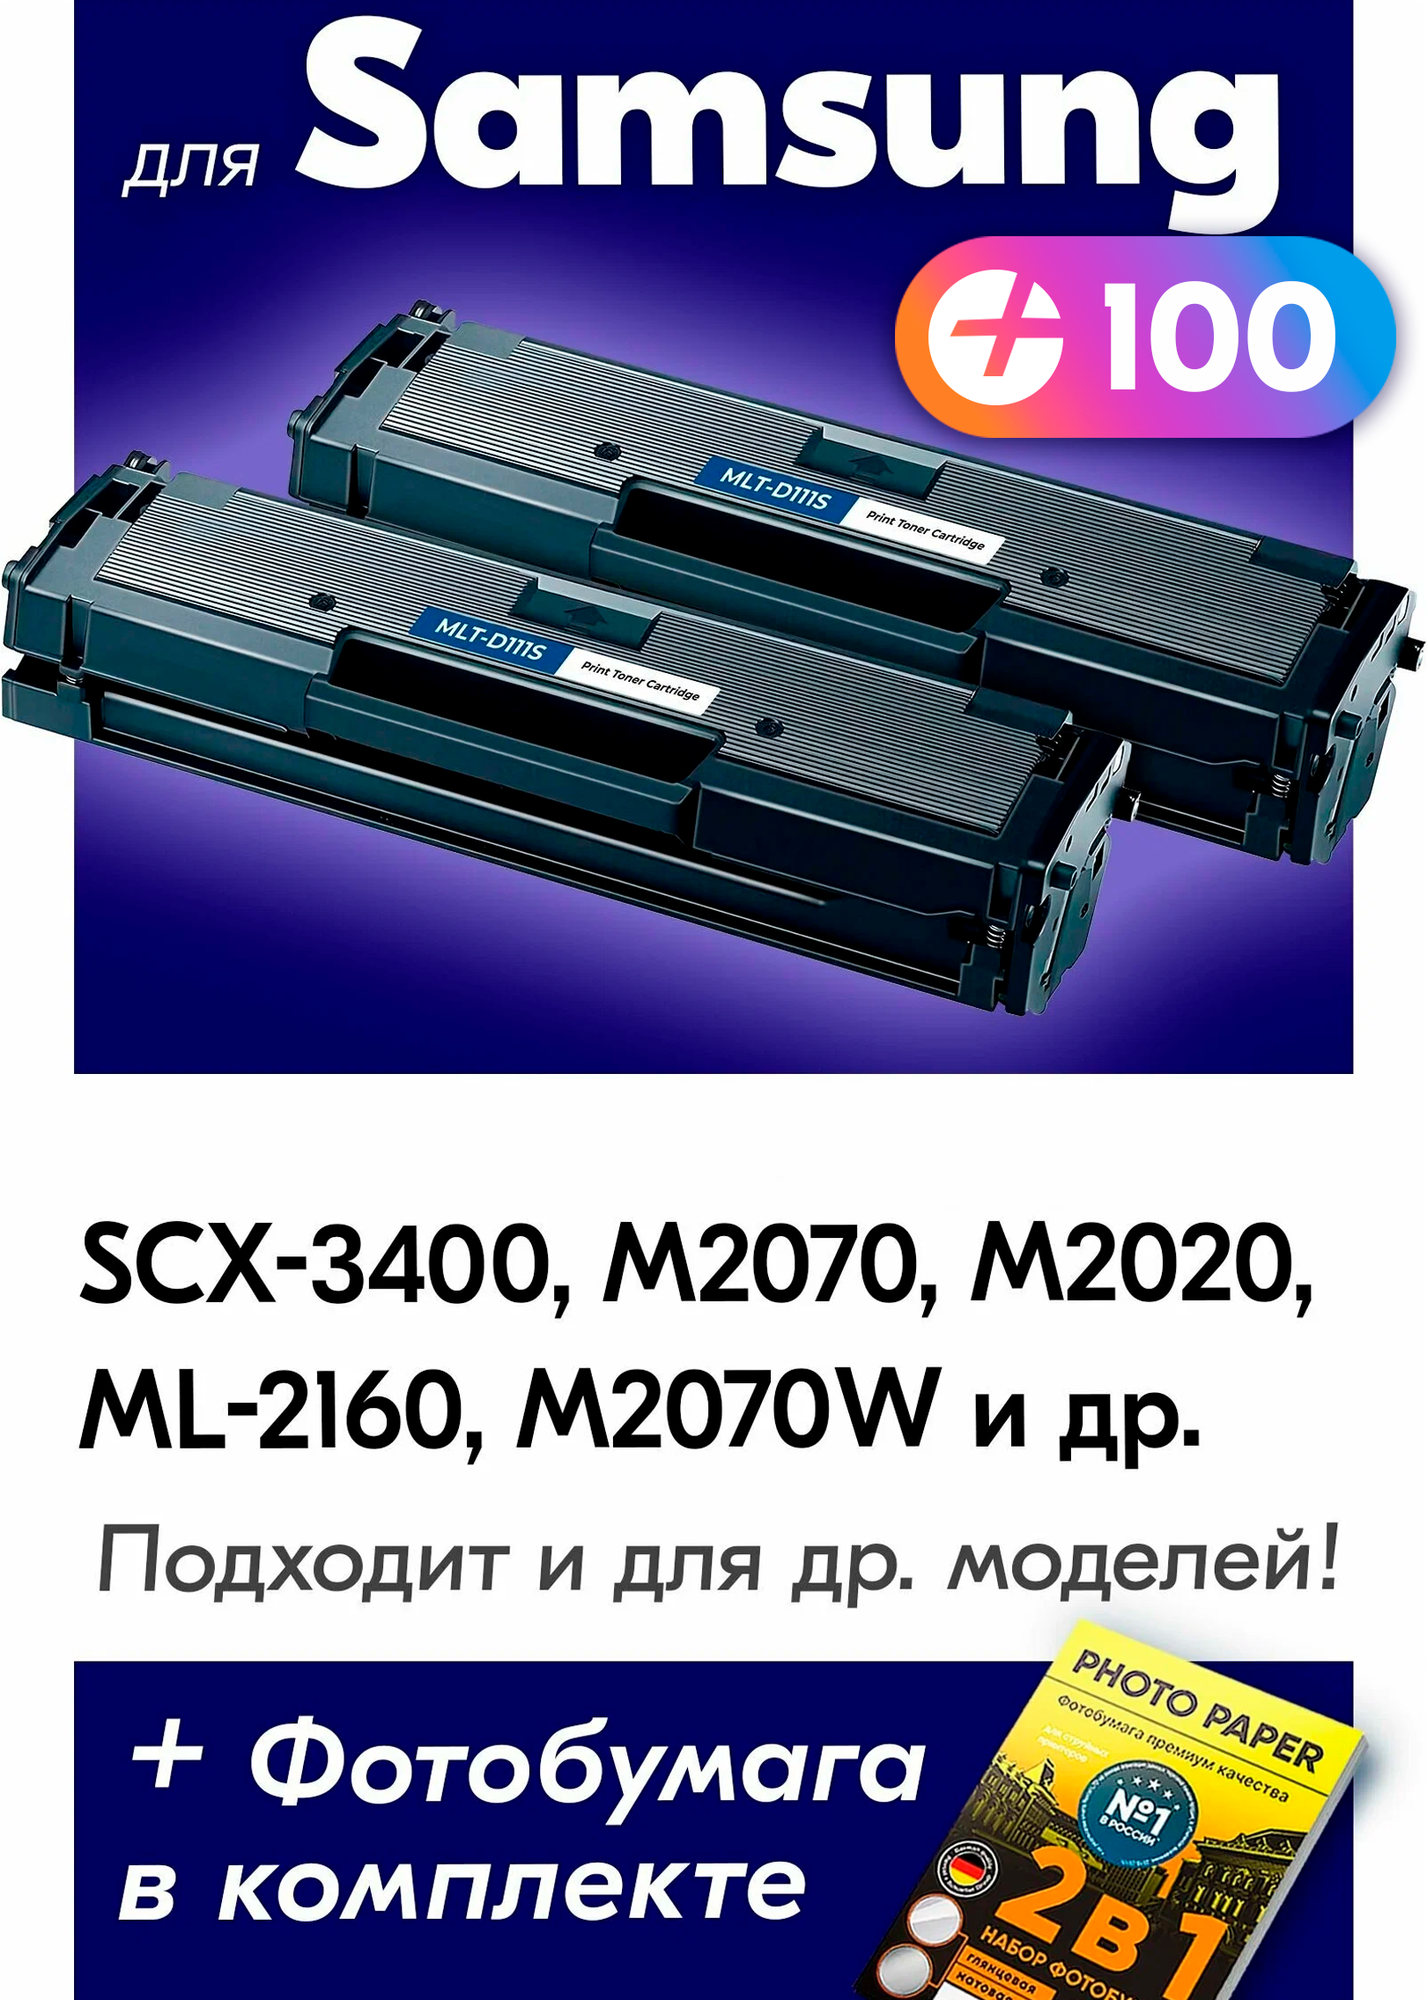 Лазерные картриджи для Samsung MLT-D111S, Samsung Xpress M2070 и др. с краской (тонером) черные новые заправляемые 2шт, 2000 копий